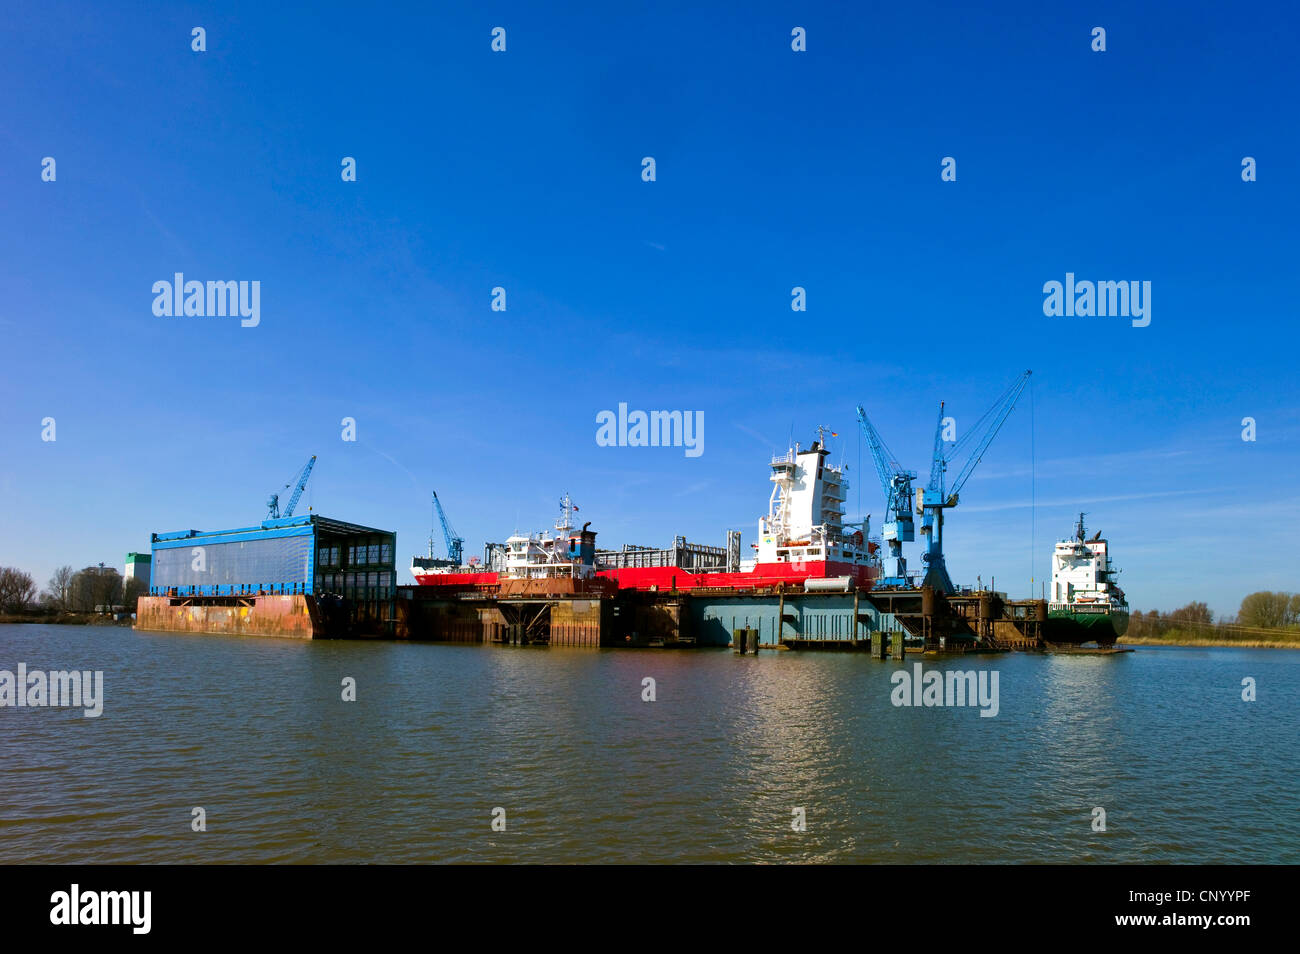 Le navi nel bacino galleggiante sul fiume Weser, Germania, Bremerhaven Foto Stock